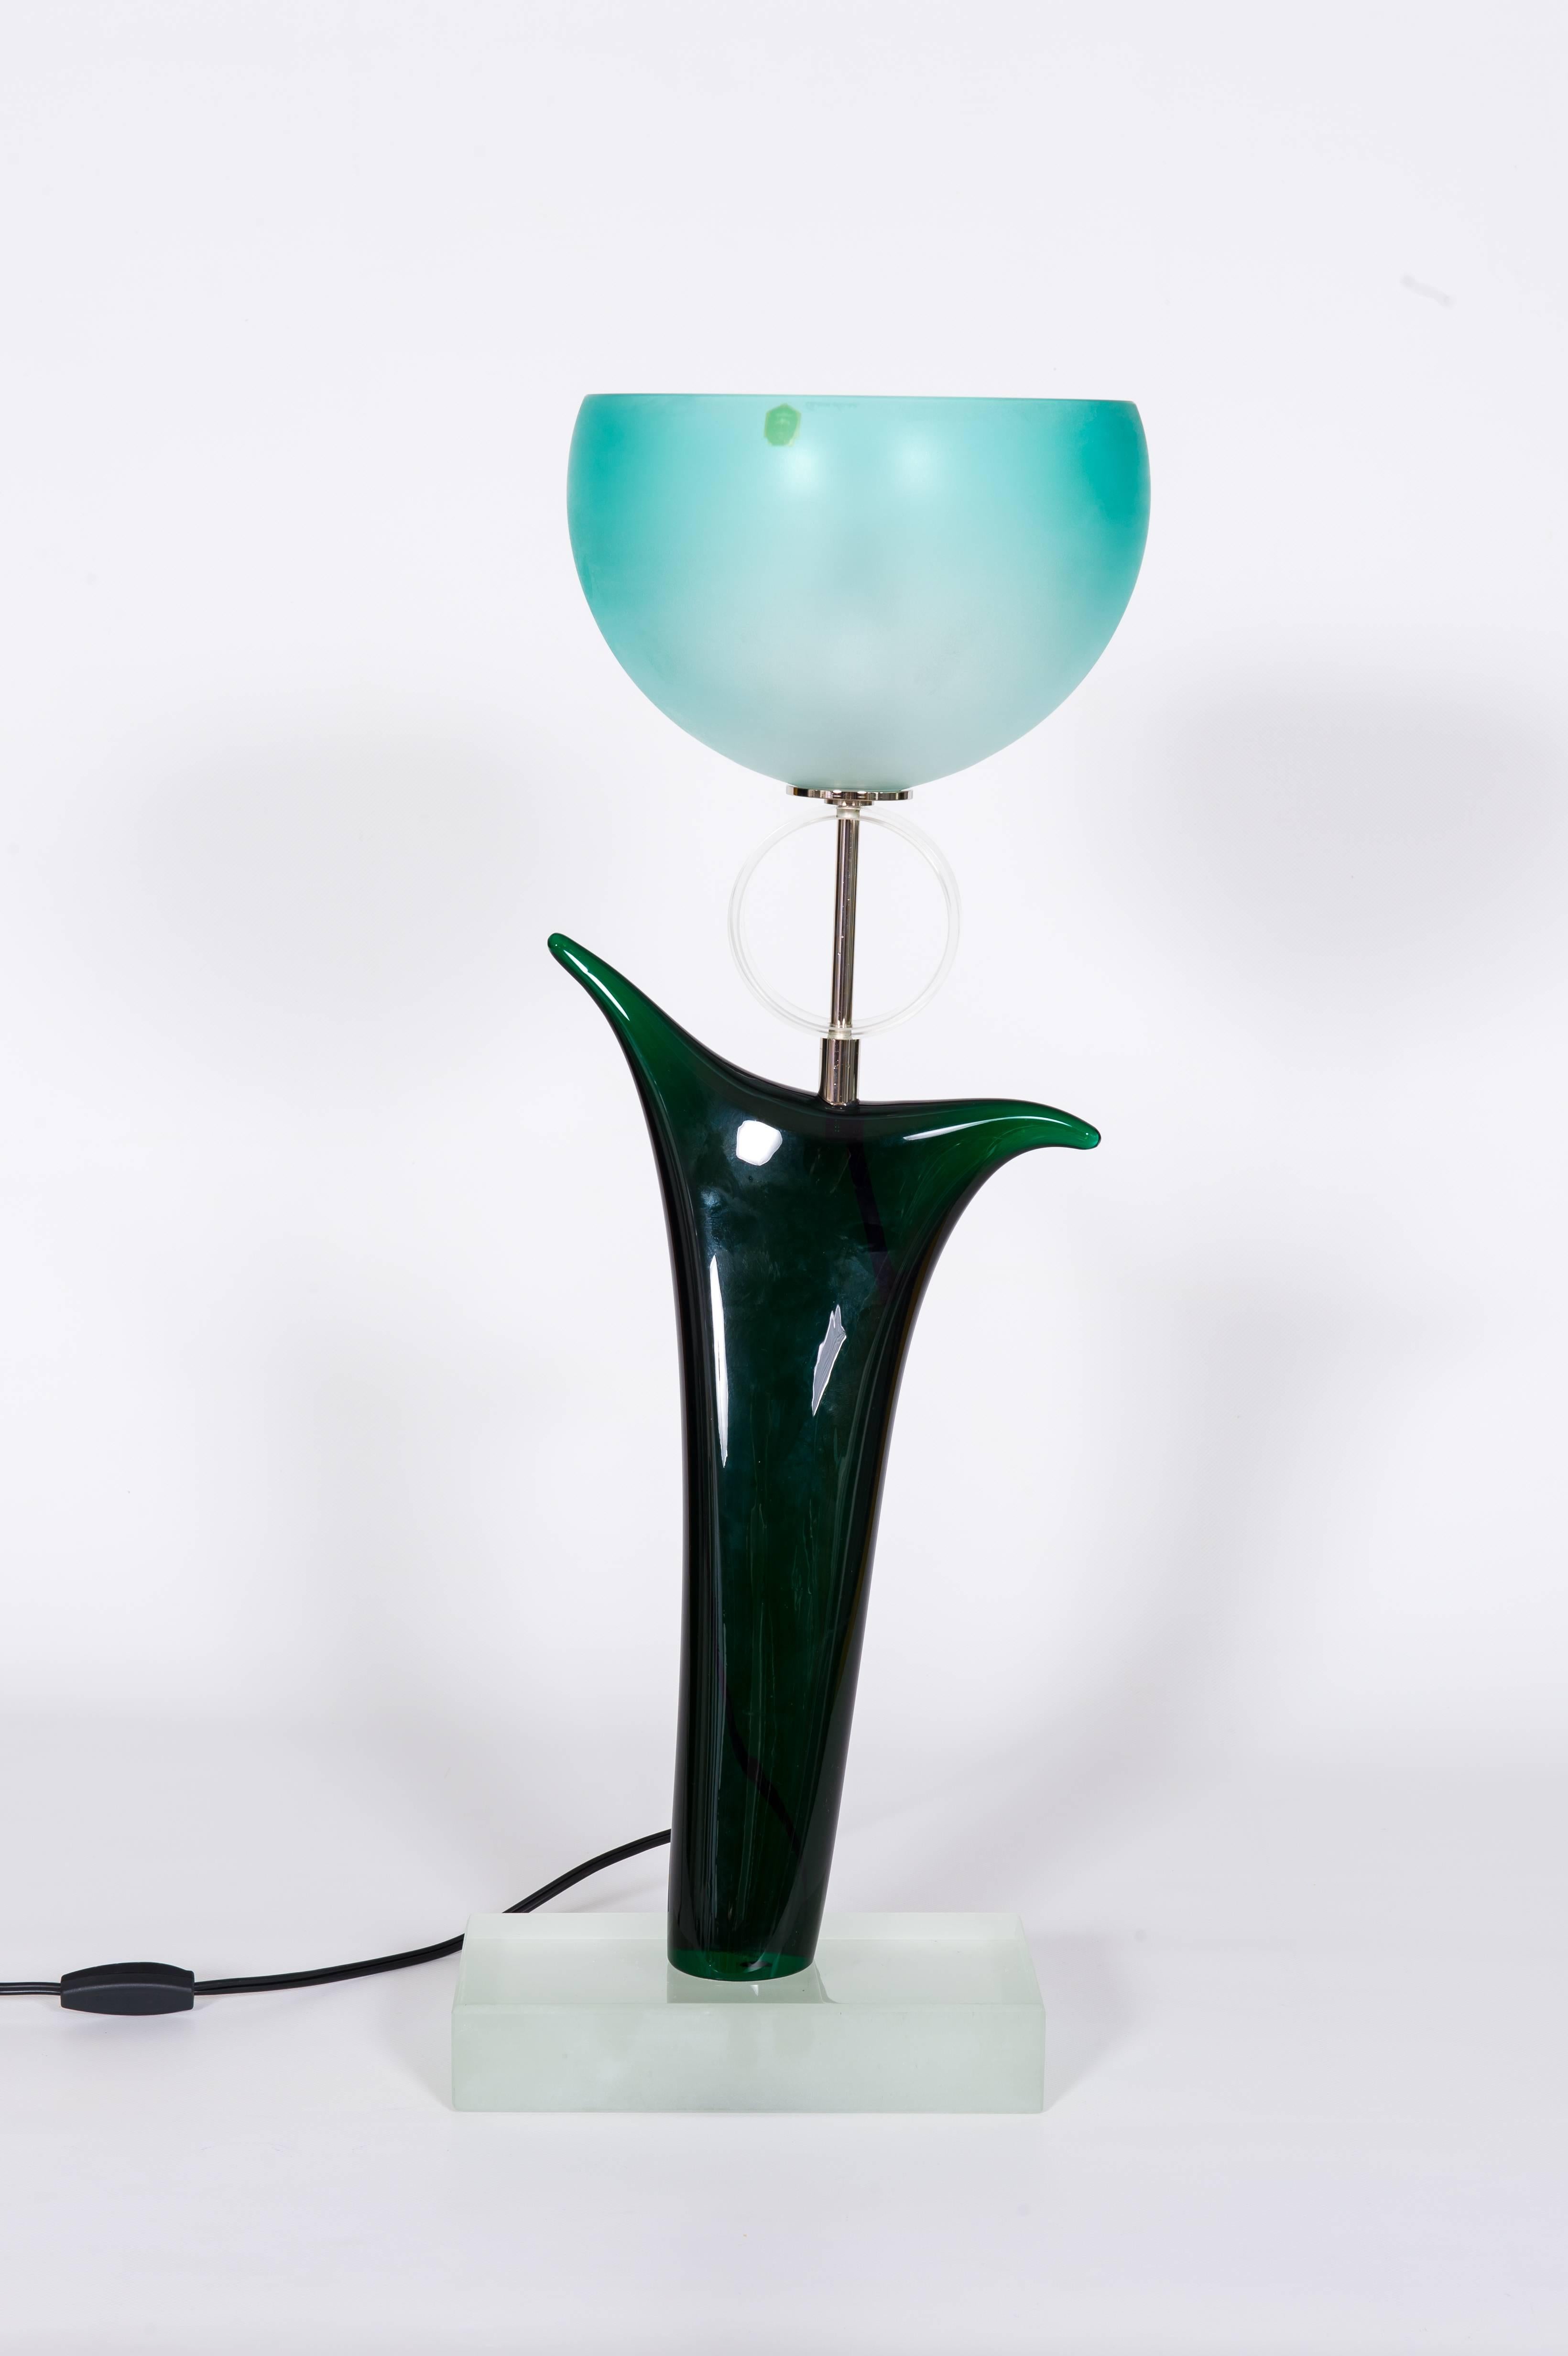 Original Cenedese Tulip Tischlampe aus grünem und blauem Murano Glas, 1970er Jahre Italien

Diese in den 1970er Jahren in Murano vollständig handgefertigte Design-Tischleuchte ist eine authentische Kreation des berühmten venezianischen Glasbläsers